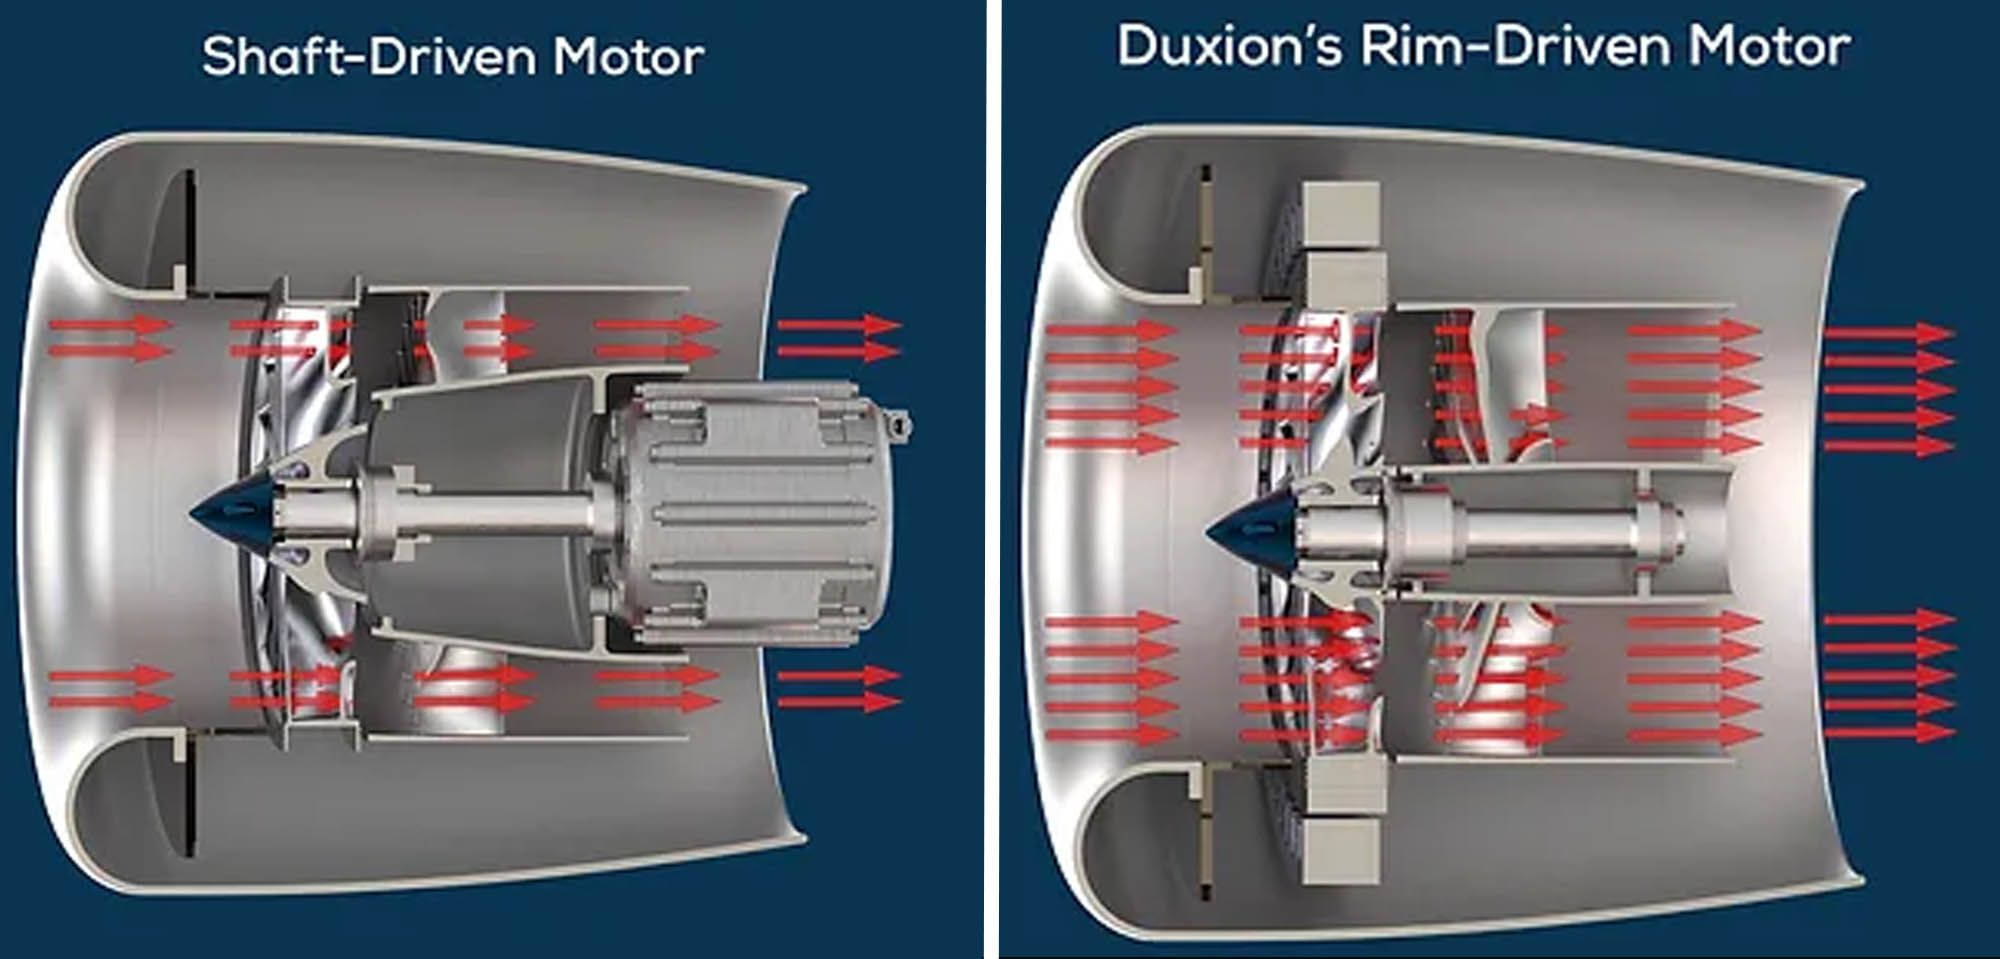 Diferencias de relación empuje-potencia entre el motor de eje tradicional (izquierda) y el rim-drive, con el rotor en el borde (derecha).